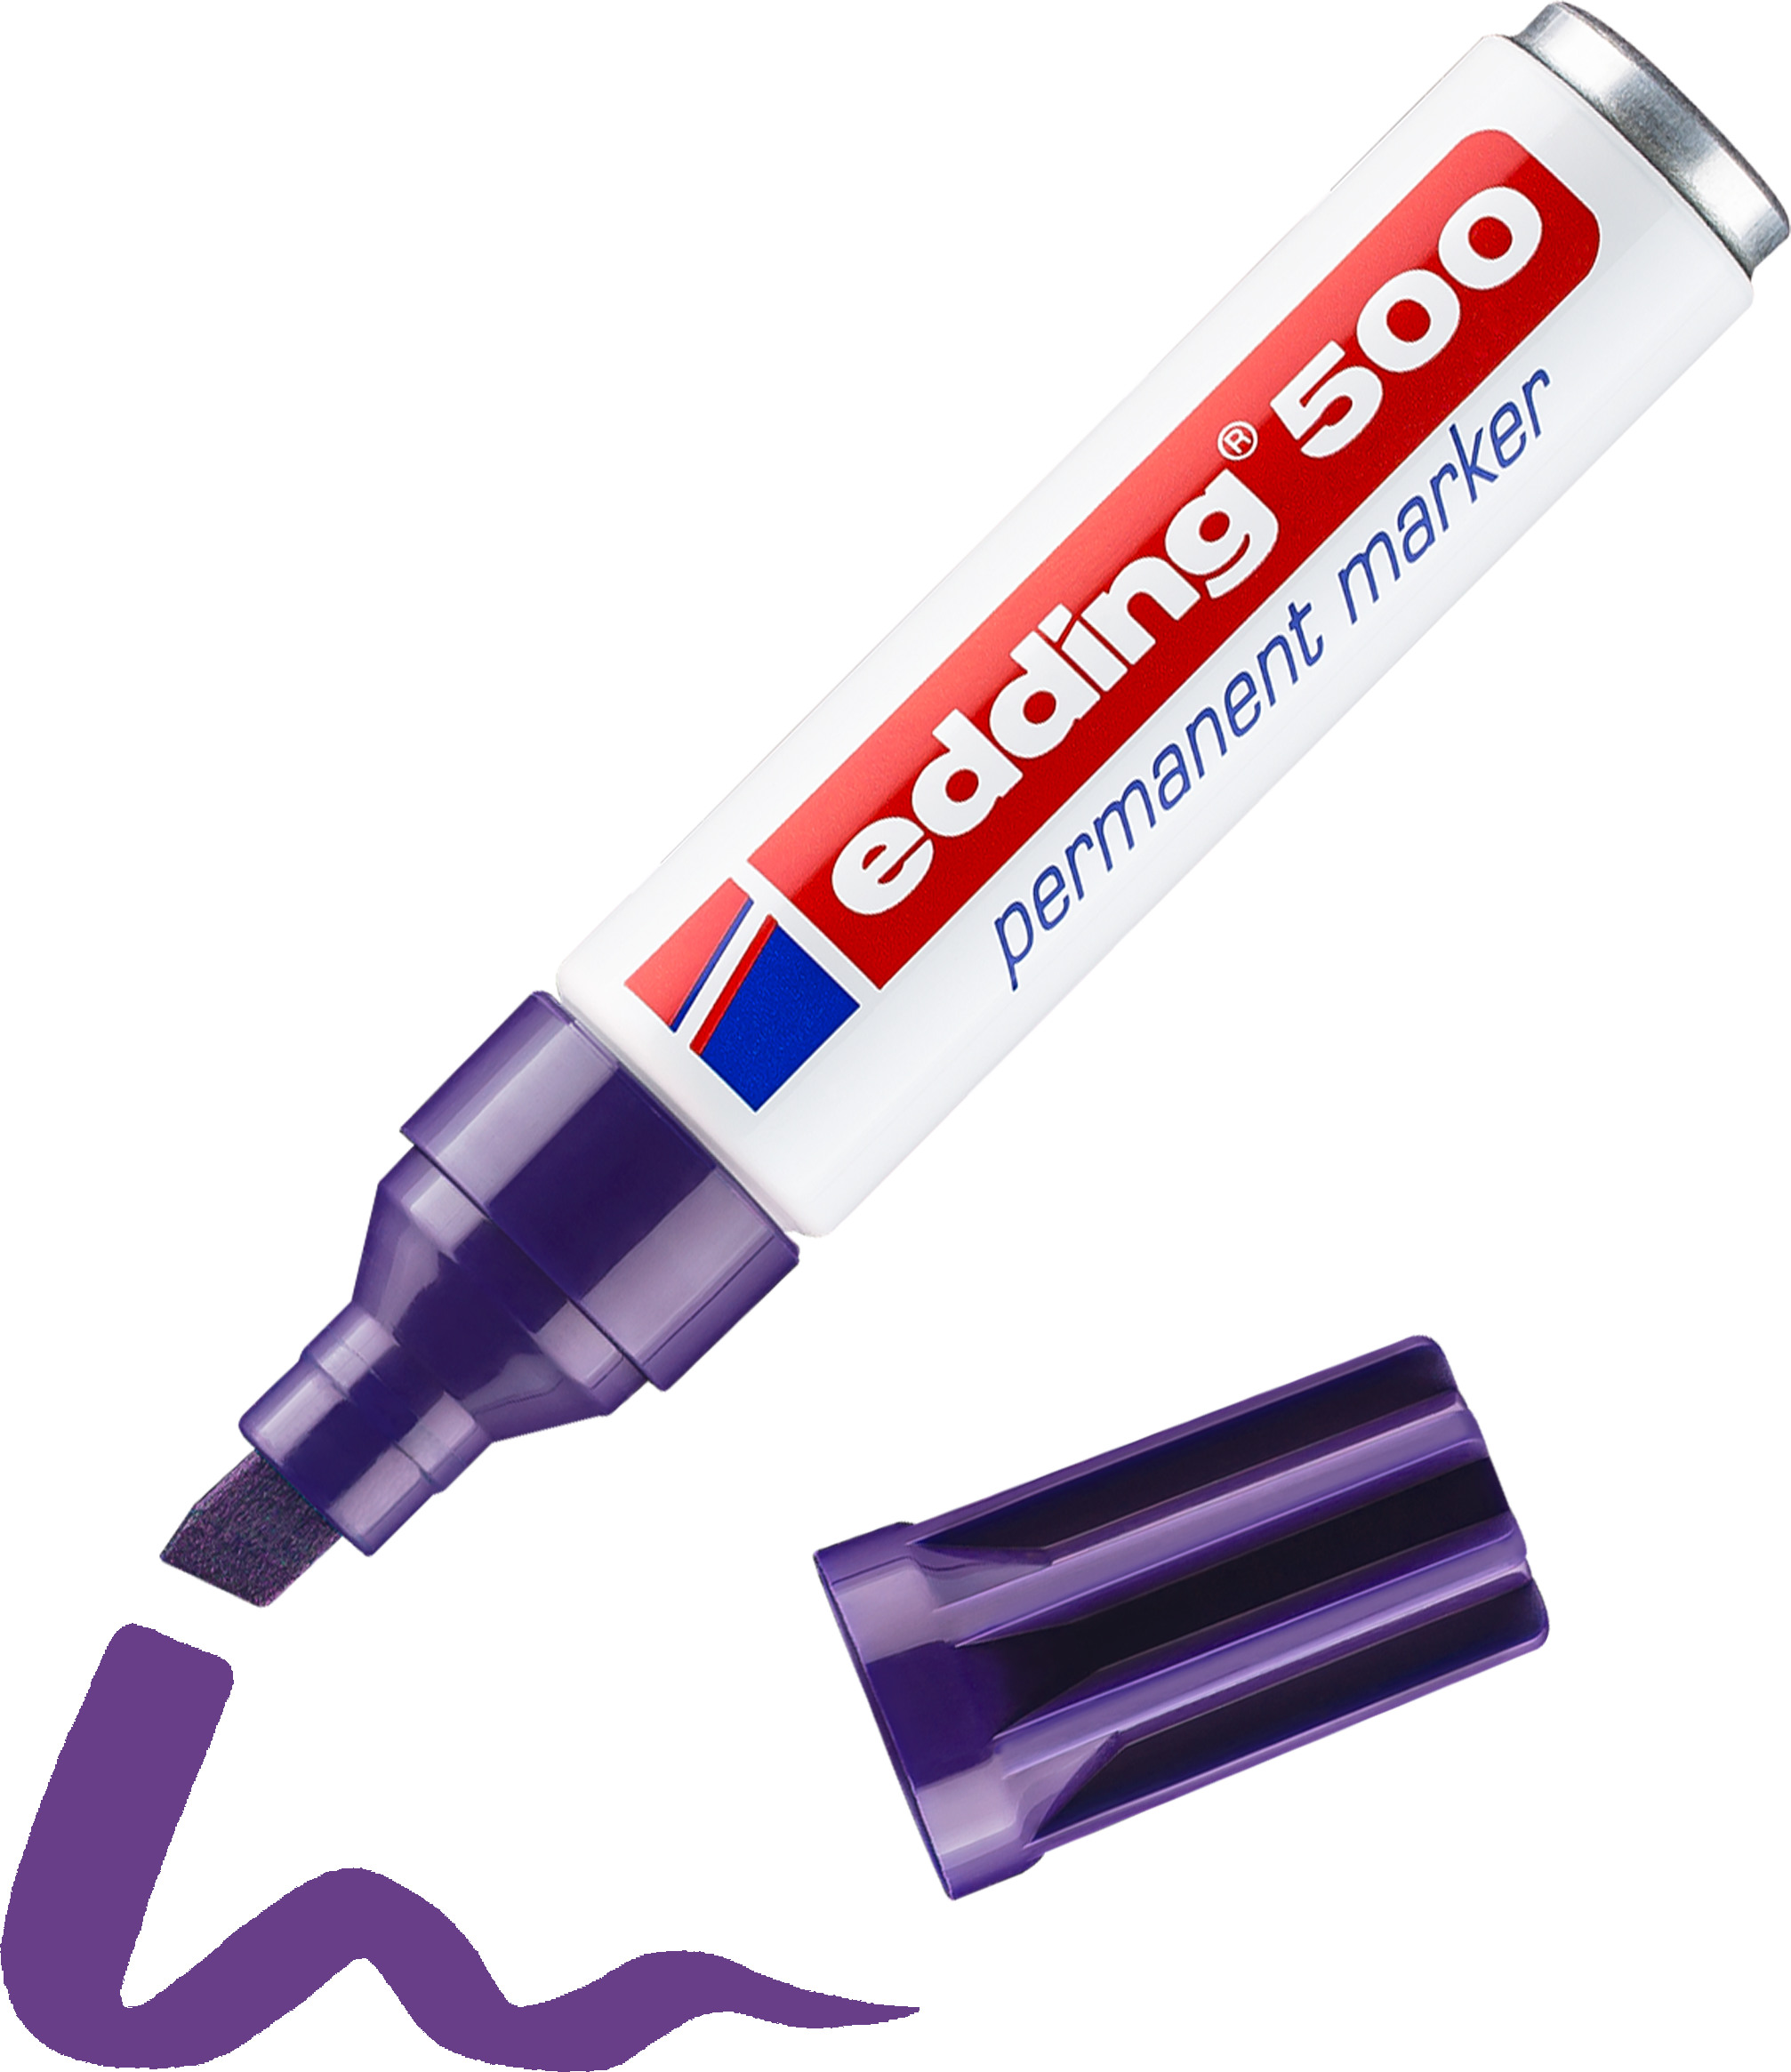 EDDING Permanent Marker 500 2-7mm 500-8 violet